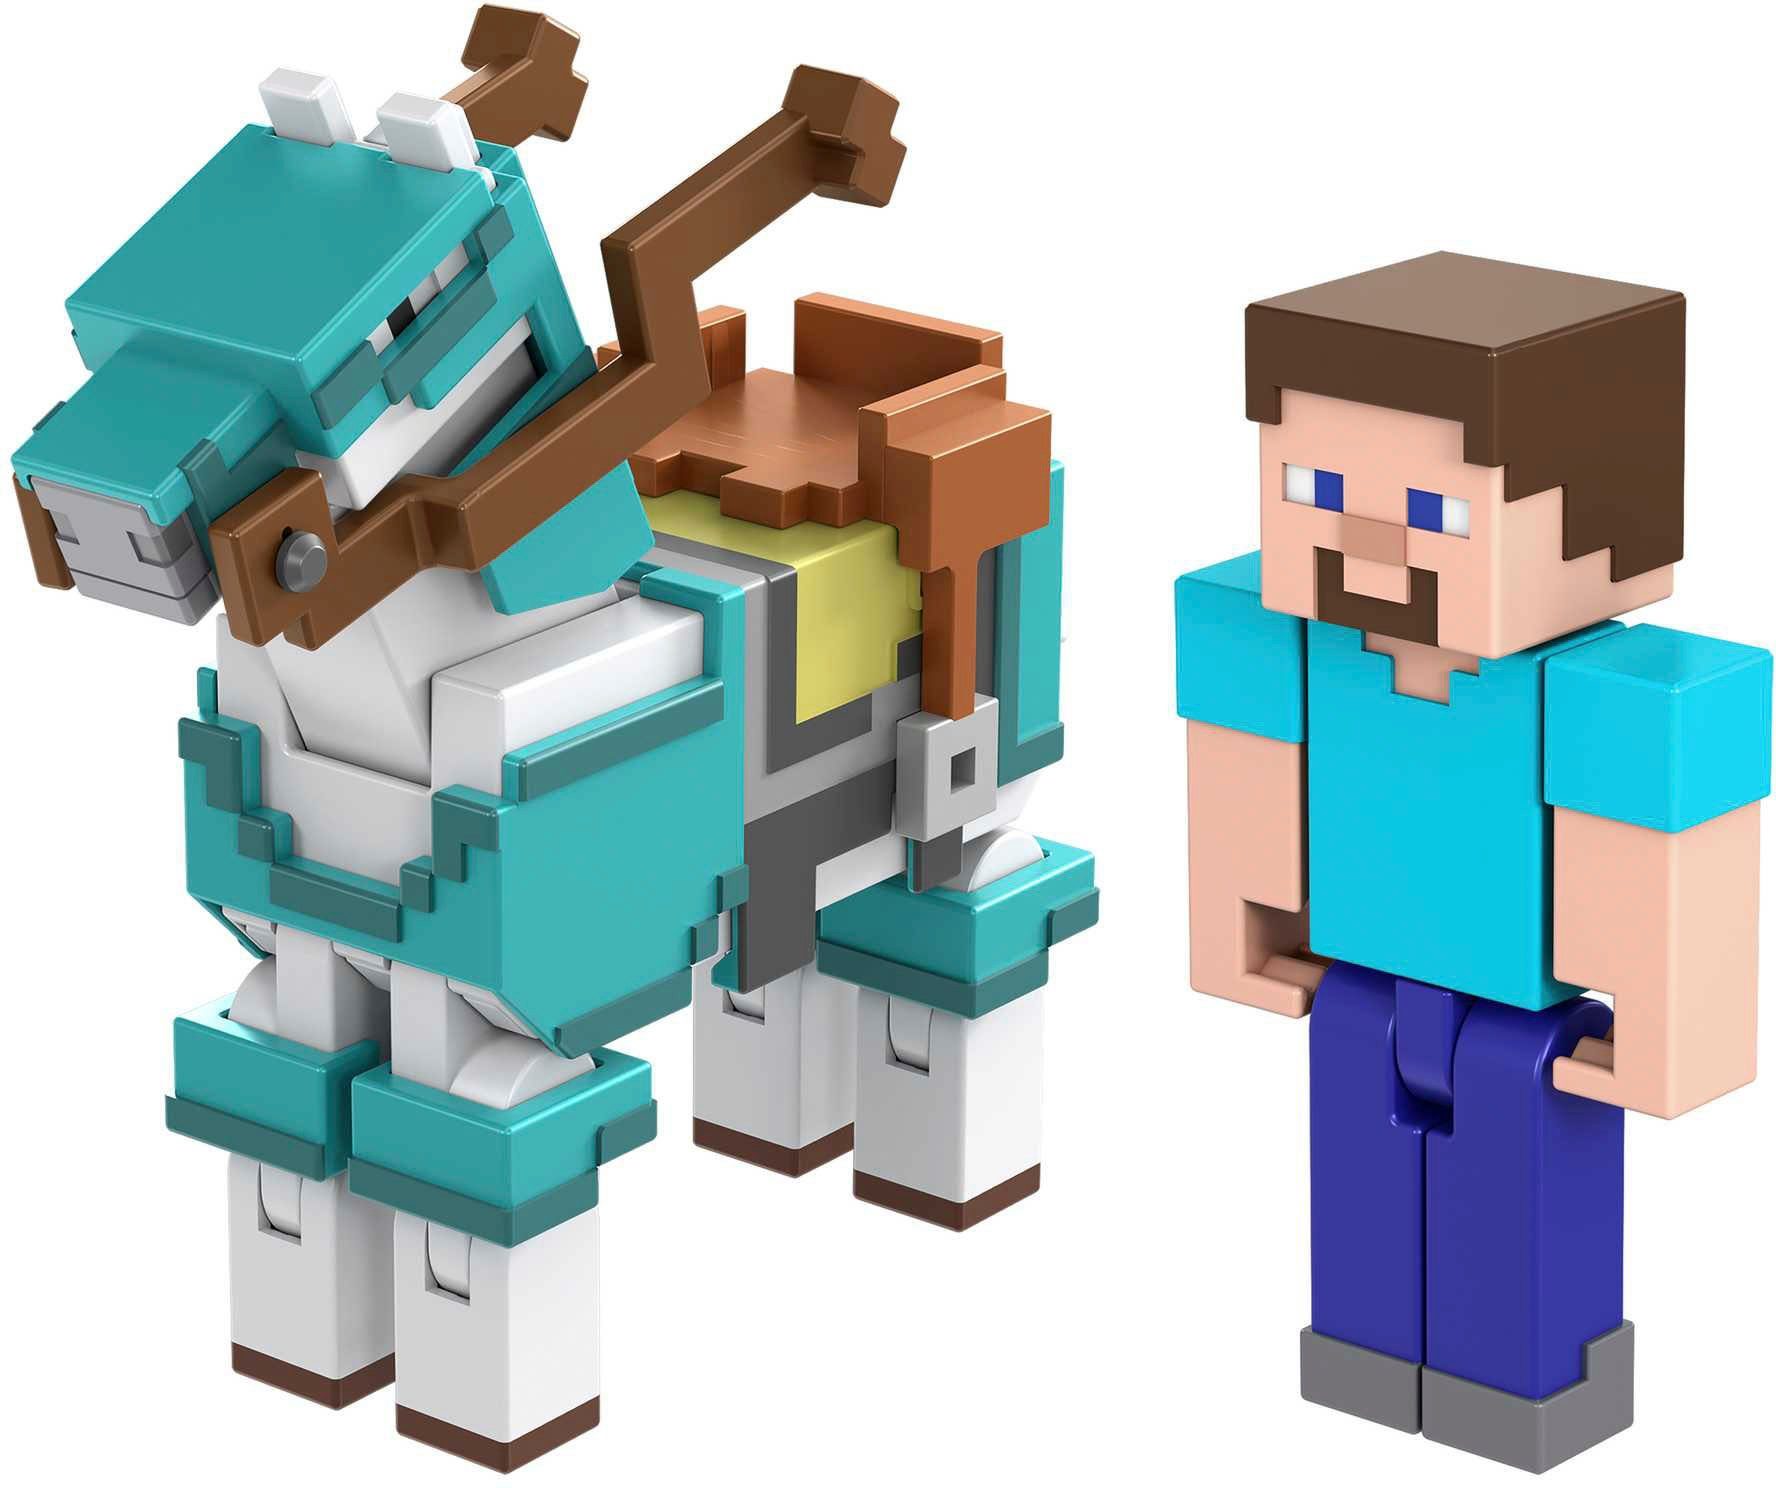 Mattel® and Minecraft, Steve Armored Horse Spielfigur